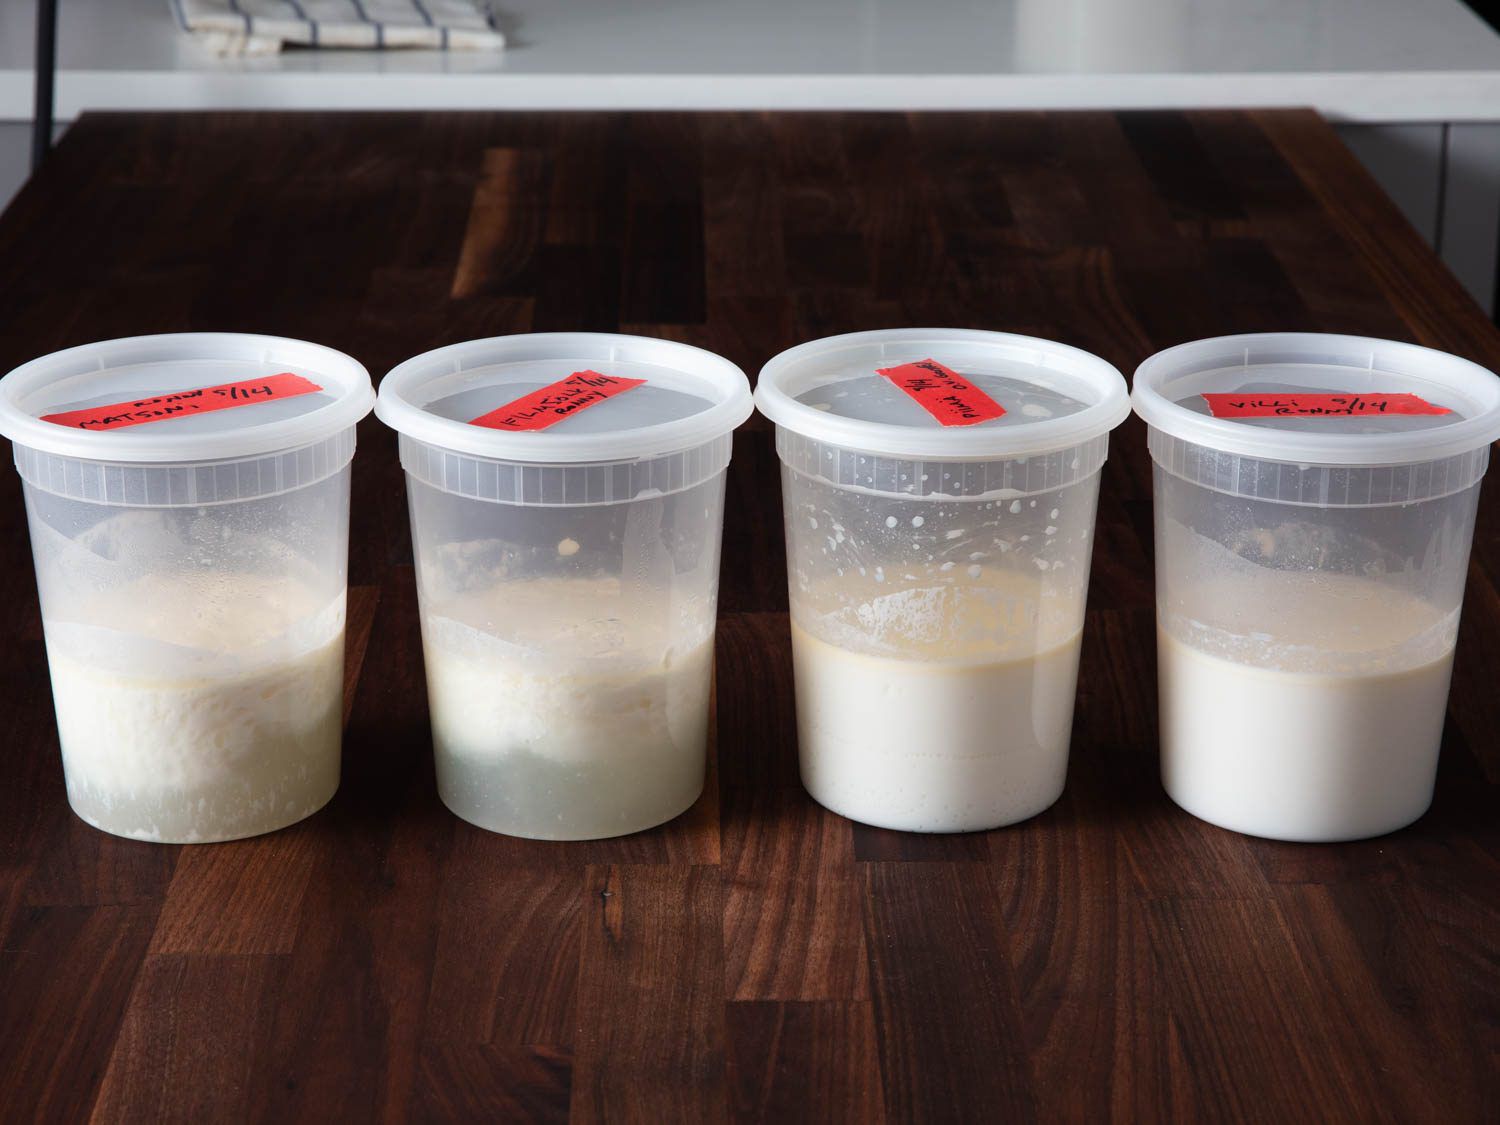 四个熟食容器不同的传家宝酸奶文化放在桌子上。